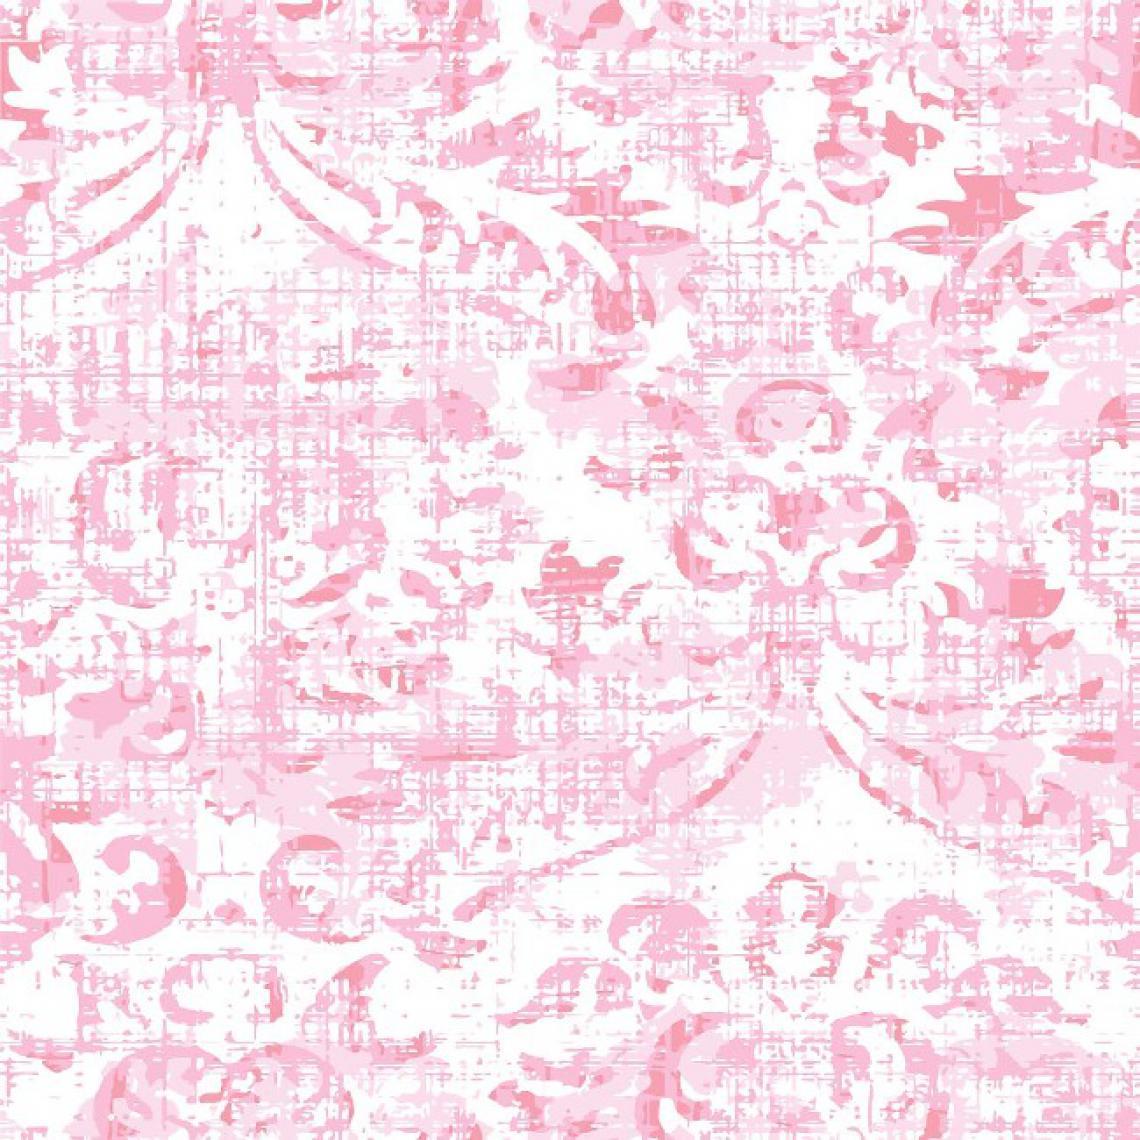 Homemania - HOMEMANIA Tapis Imprimé Pink Of Happiness - Résumé - Décoration de Maison - antidérapants - Pour Salon, séjour, chambre à coucher - Multicolore en Polyester, Coton, 80 x 120 cm - Tapis